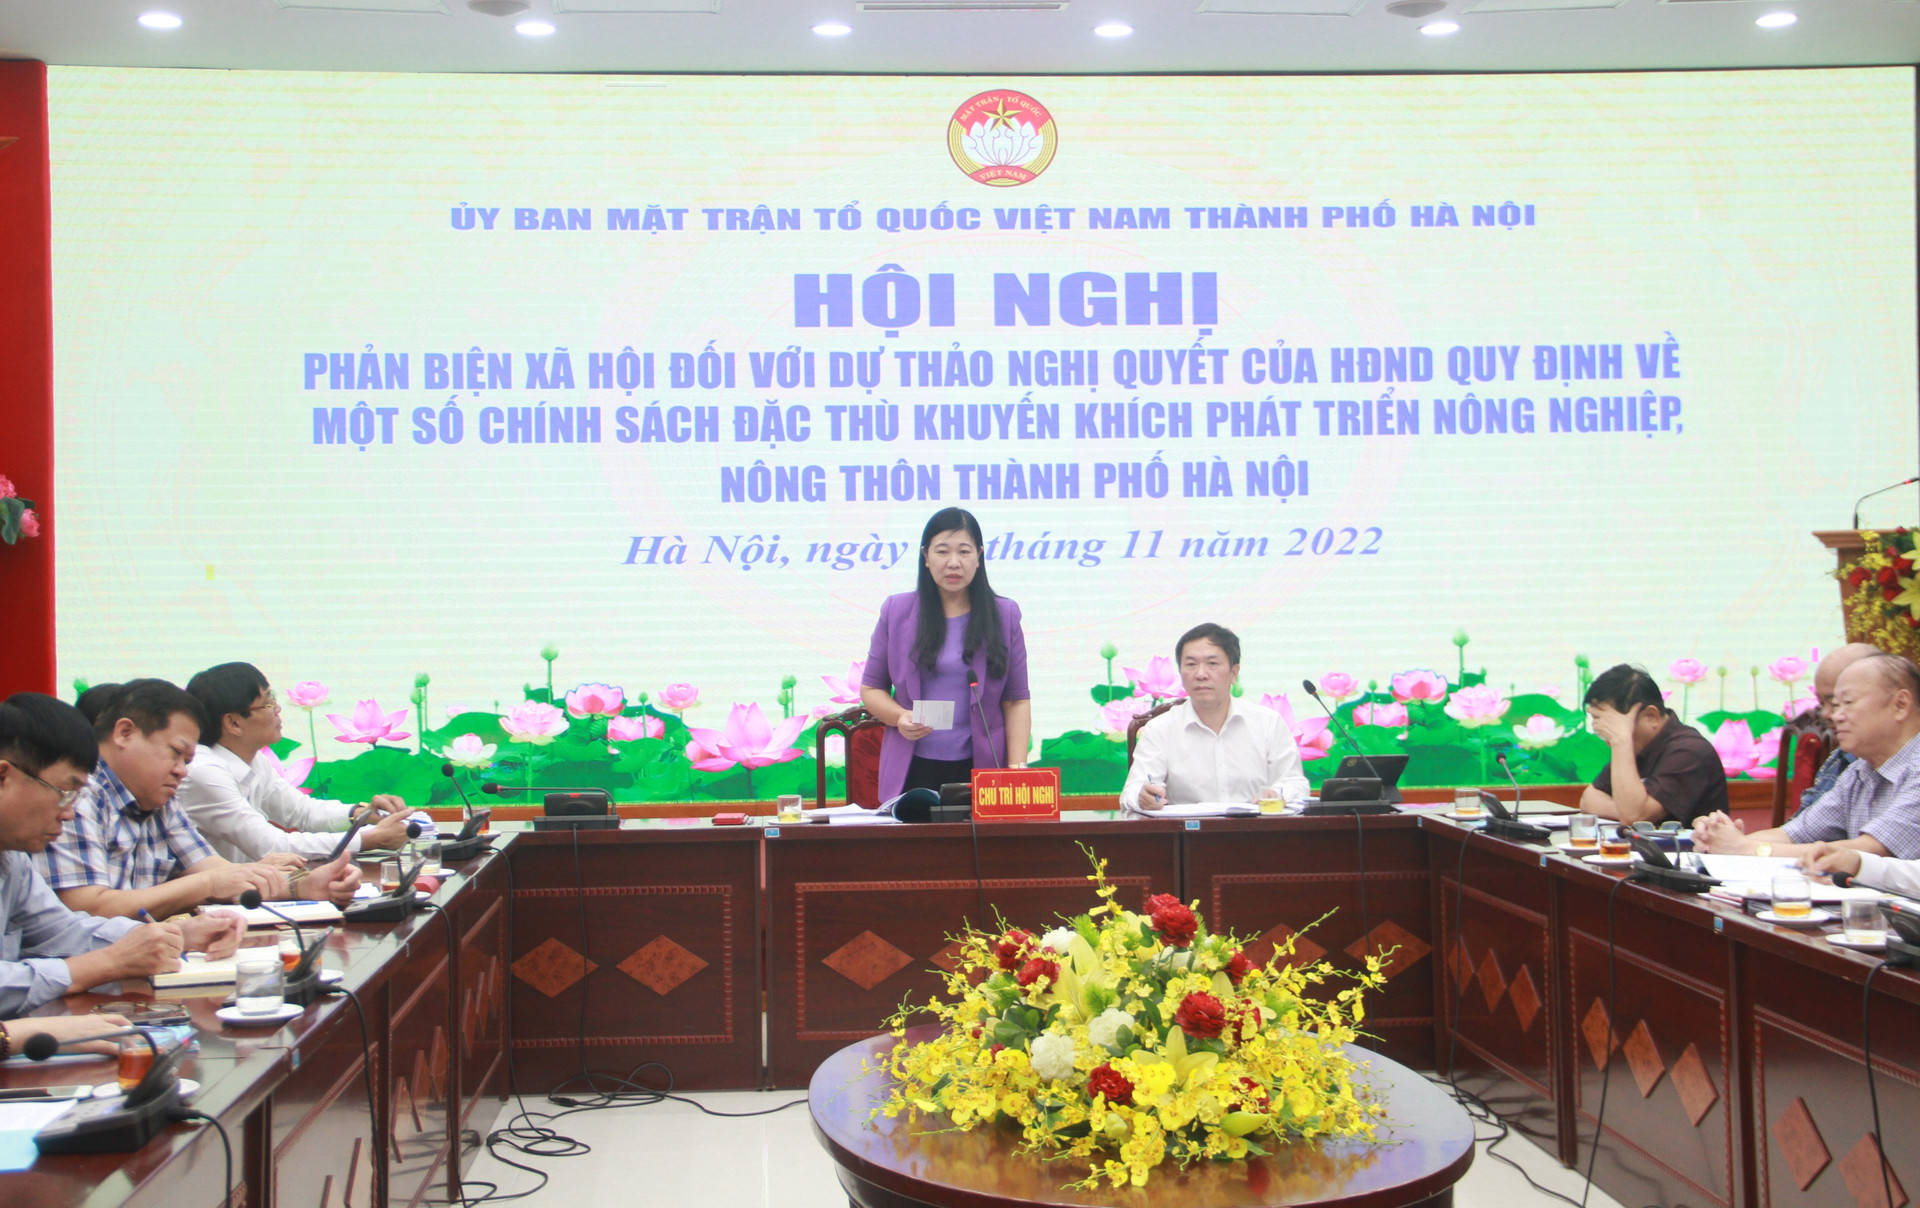 Bà Nguyễn Lan Hương, Chủ tich Ủy ban MTTQ Việt Nam thành phố Hà Nội phát biểu.